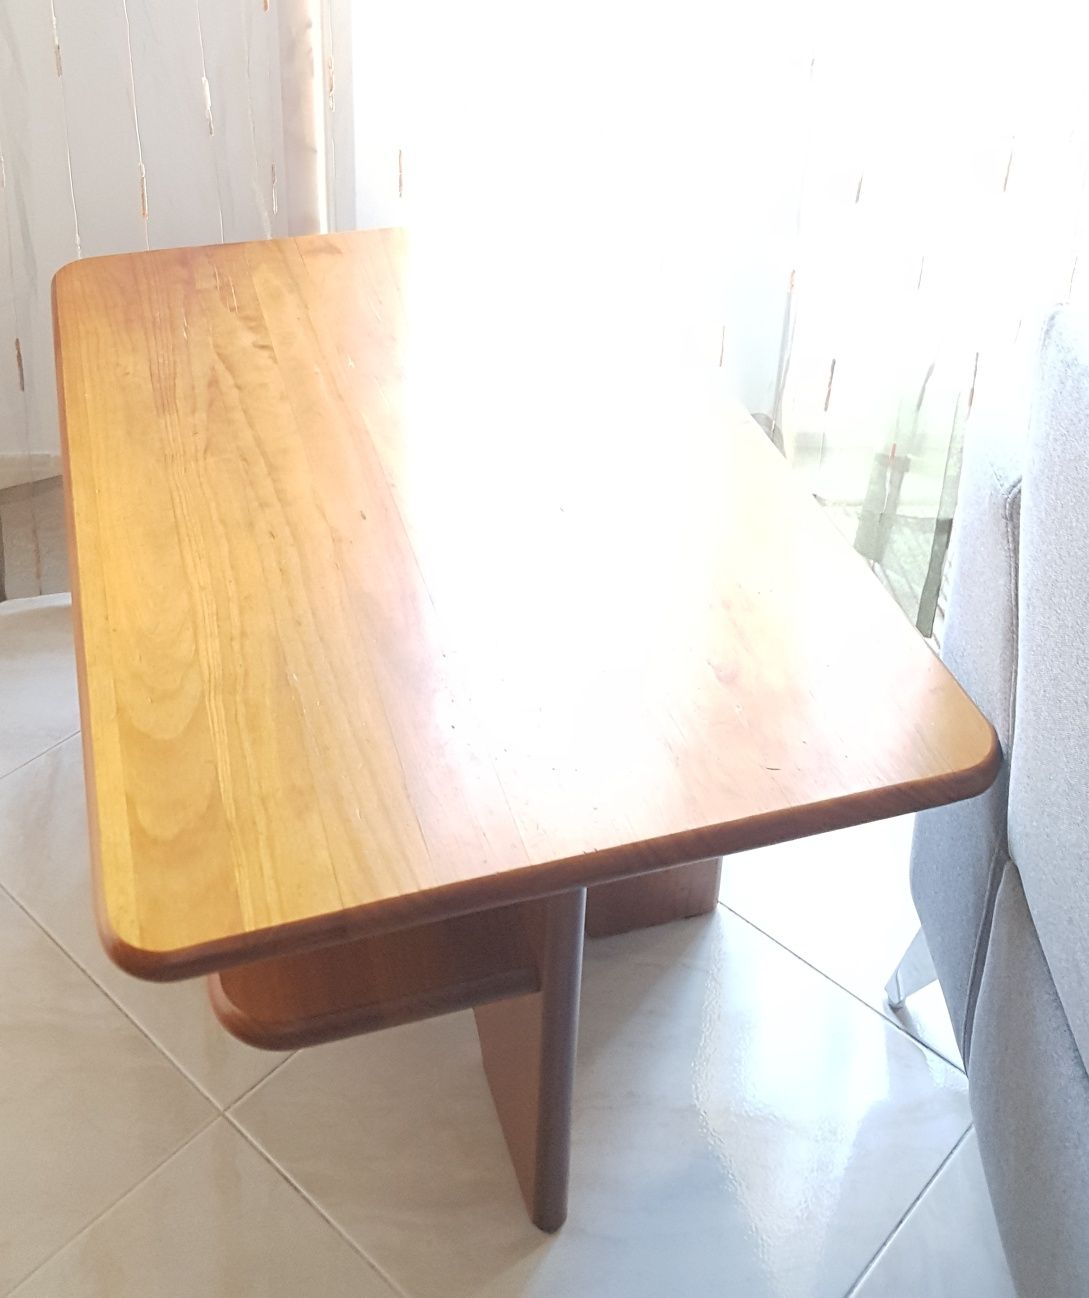 Vendo mesa apoio em pinho tratado cor mel da marca Cerne, original